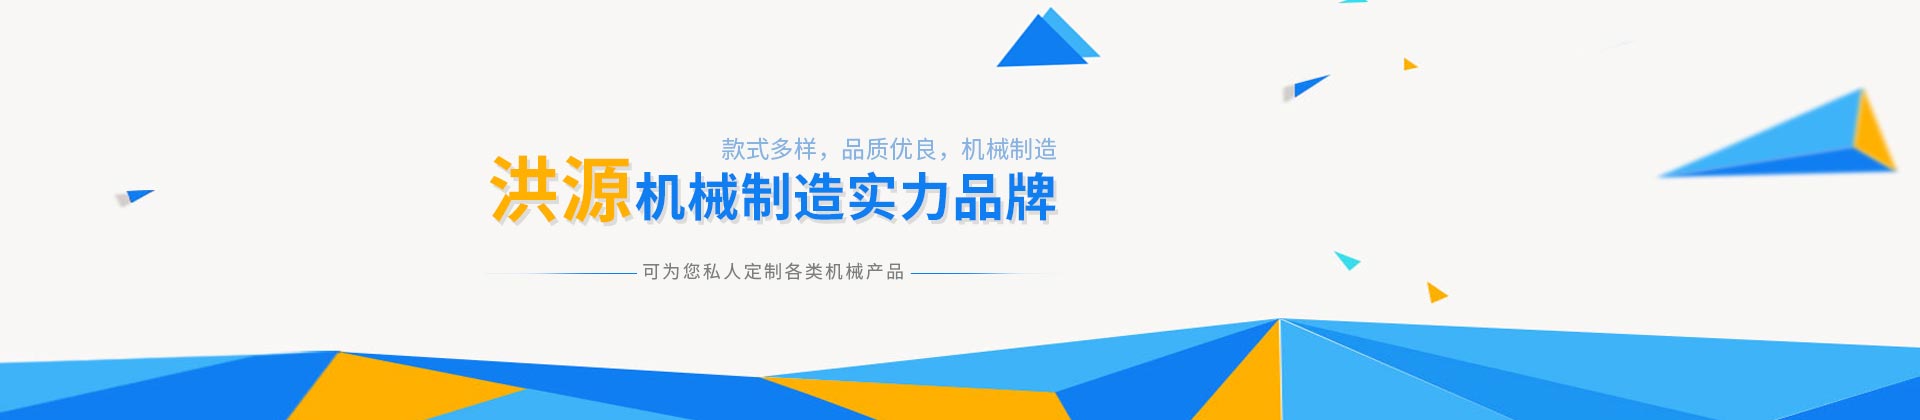 安博·体育(中国)股份有限公司官网设计